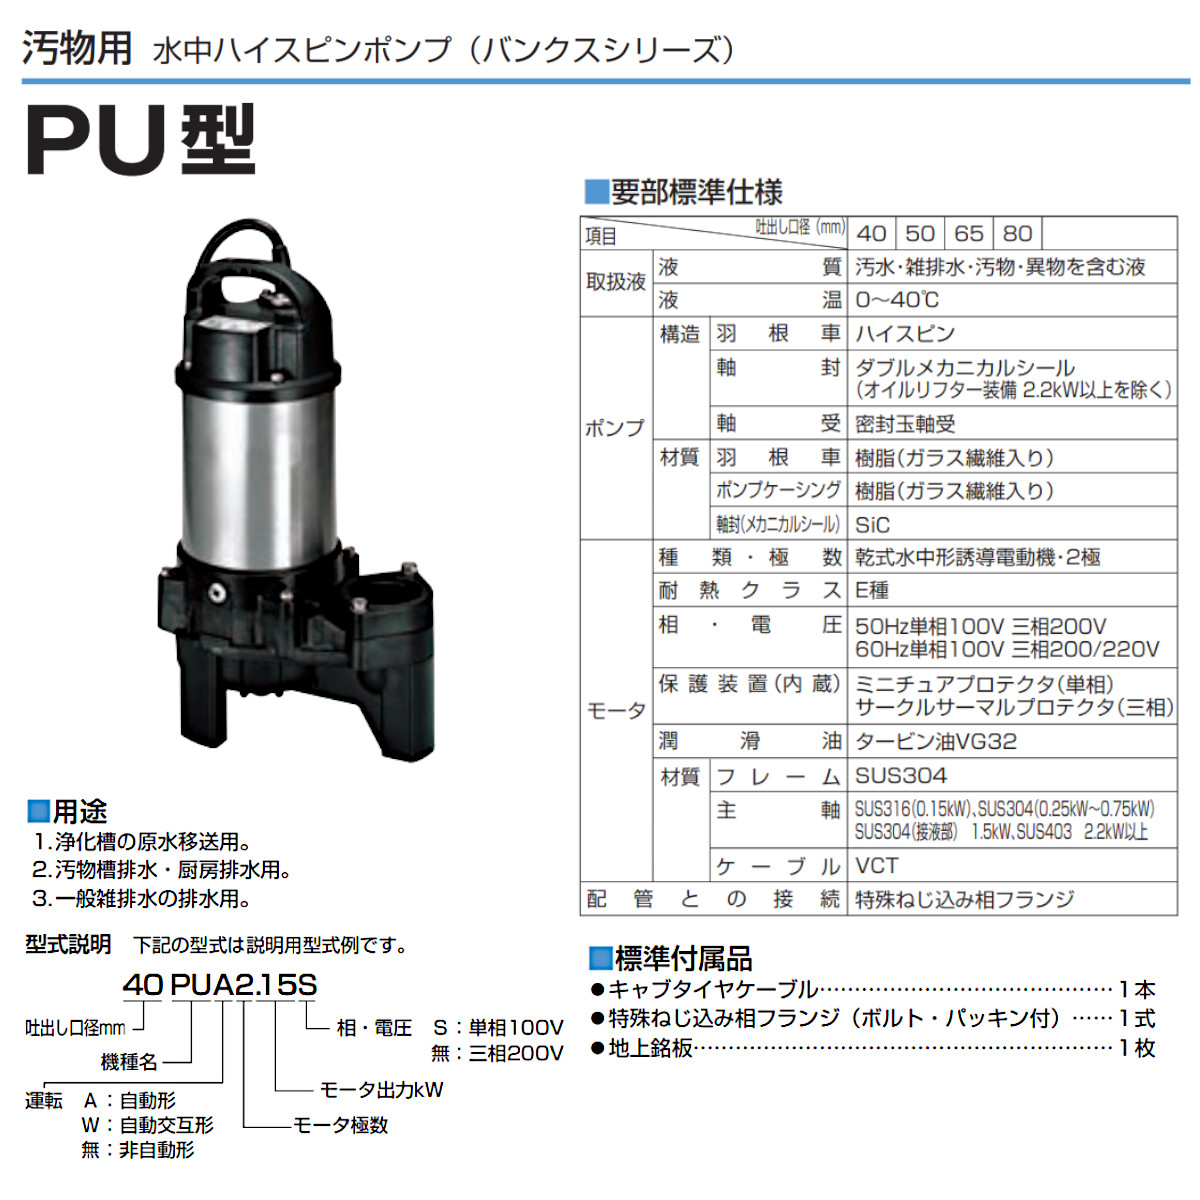 ツルミ 汚物用 水中ポンプ 40PUW2.15S / 40PUW2.15 自動交互形